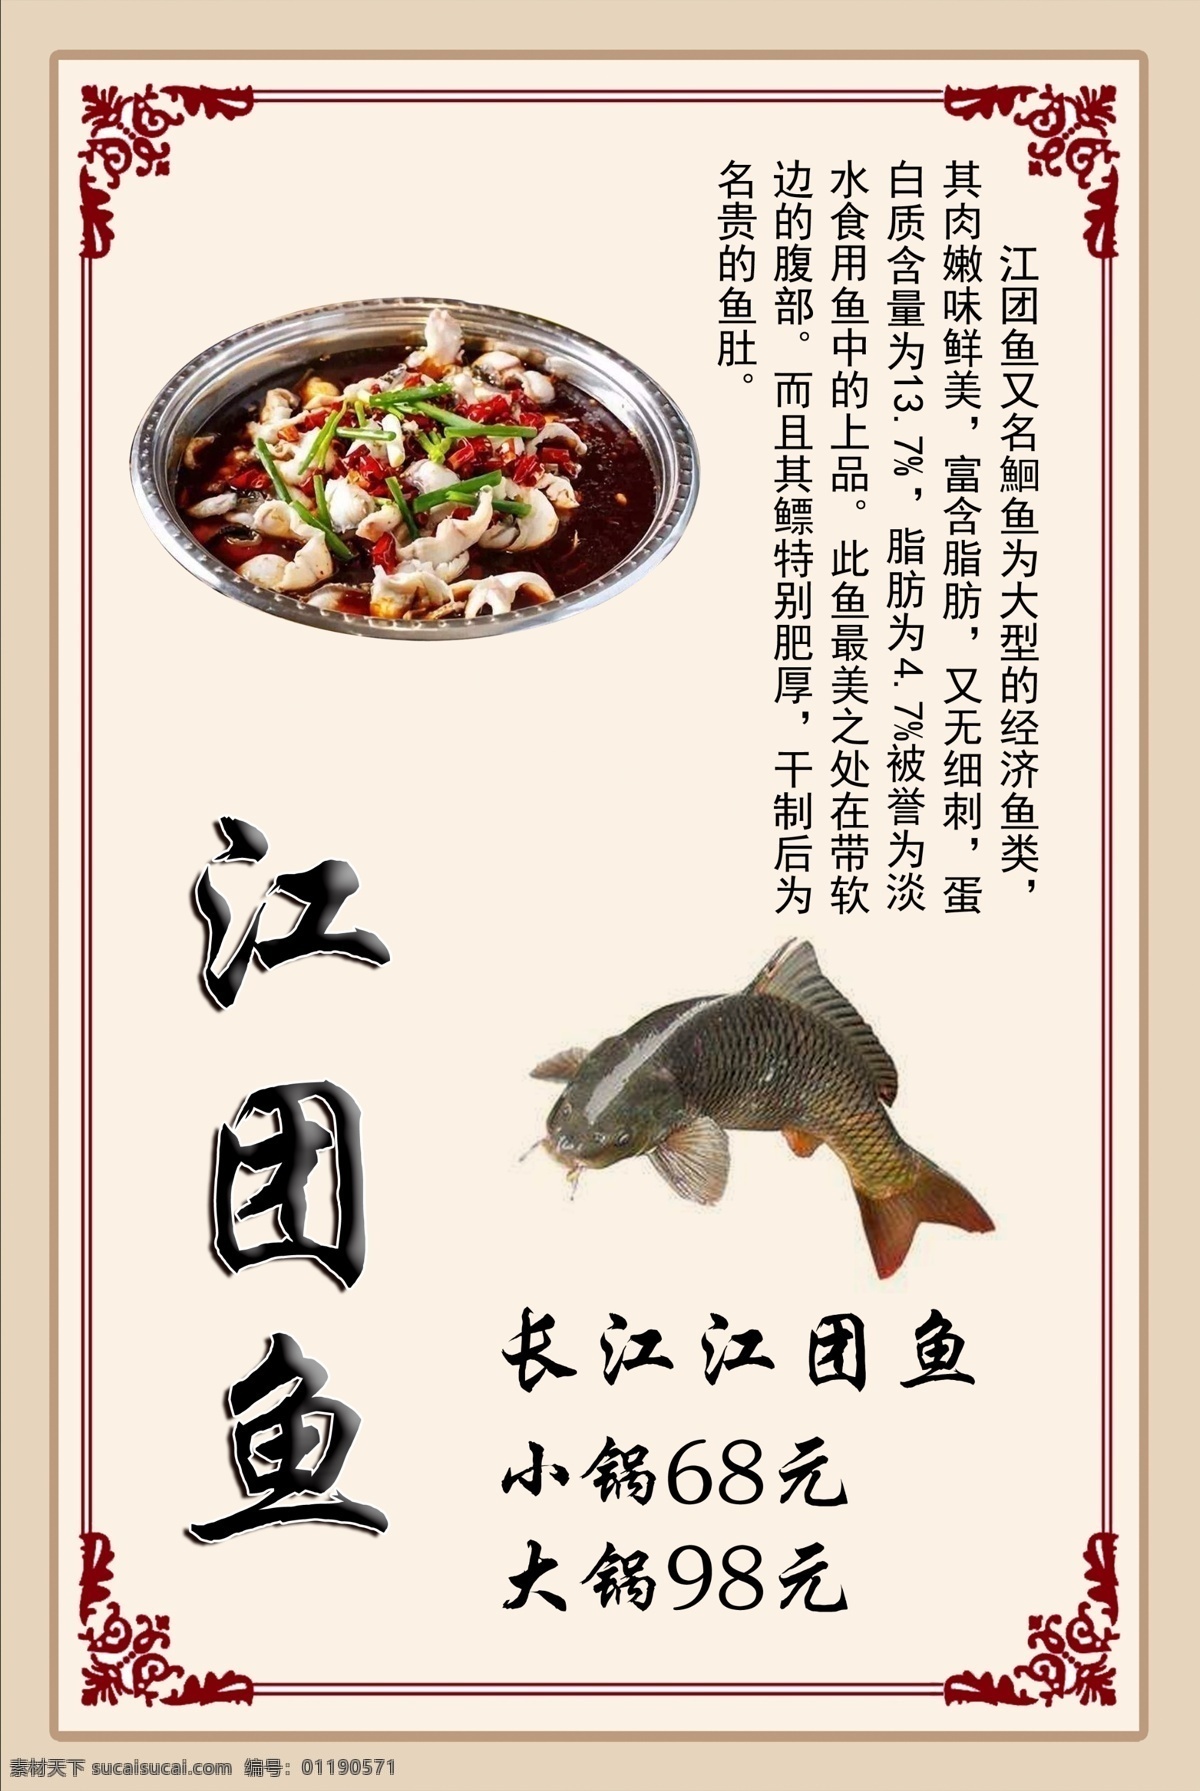 江团鱼锅 江团鱼 鱼锅 营养价值 中国风 淡黄色 分层